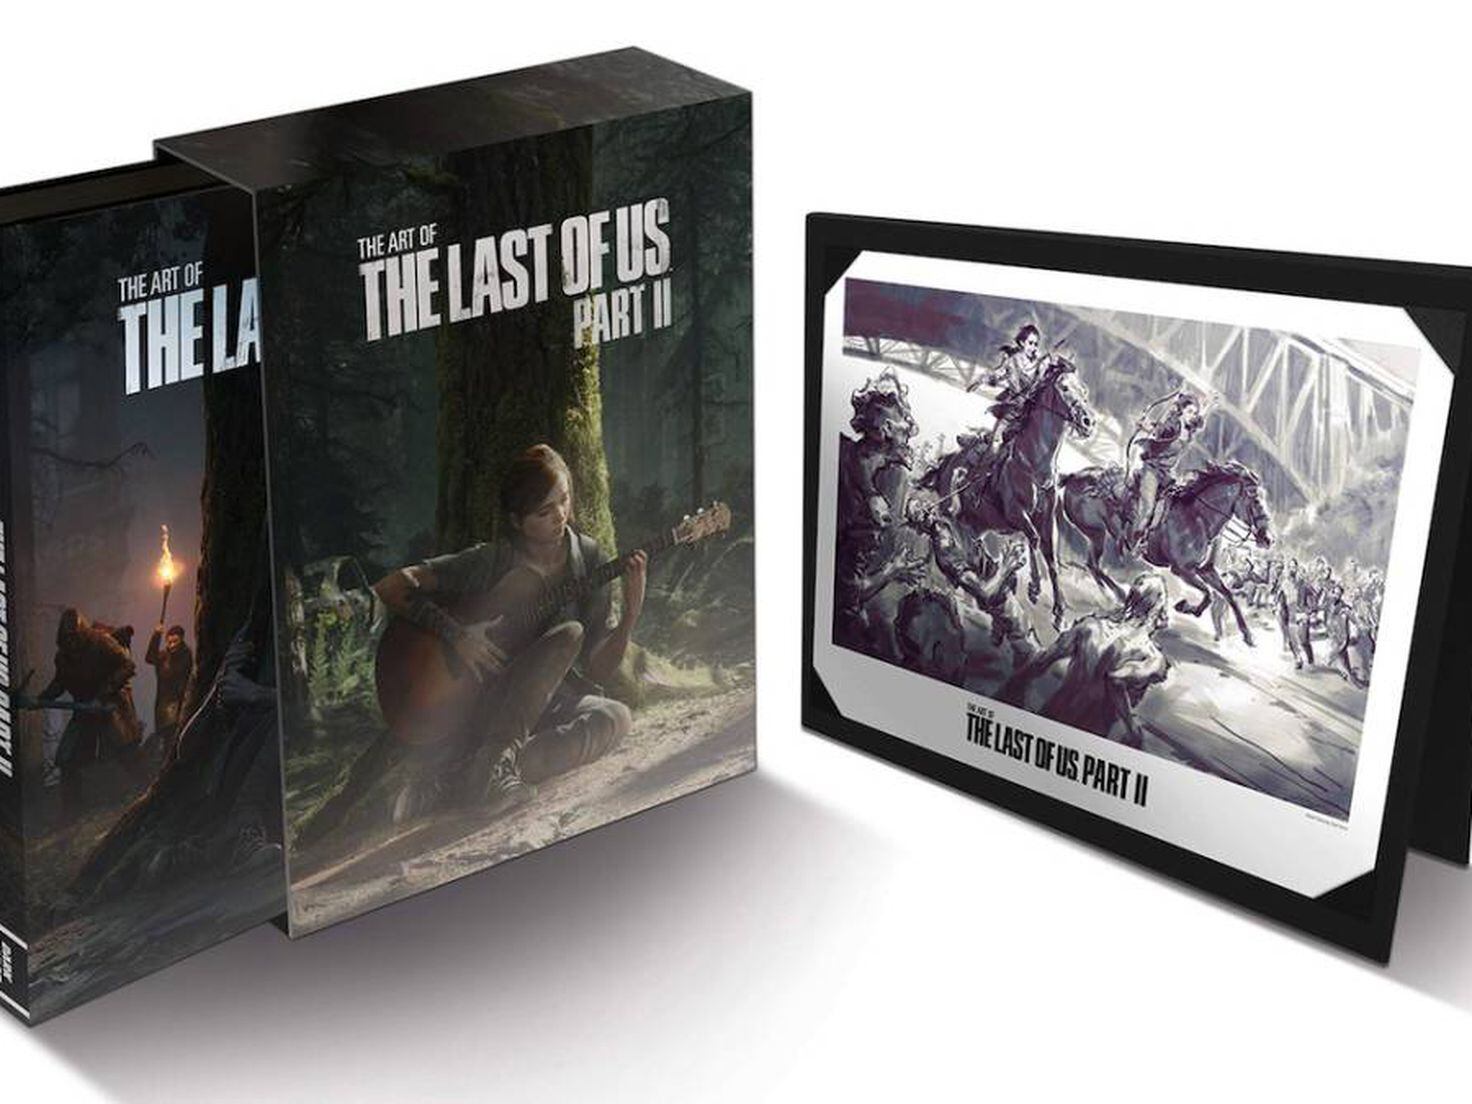 The Last of Us Parte II: Así son las diferentes ediciones del juego